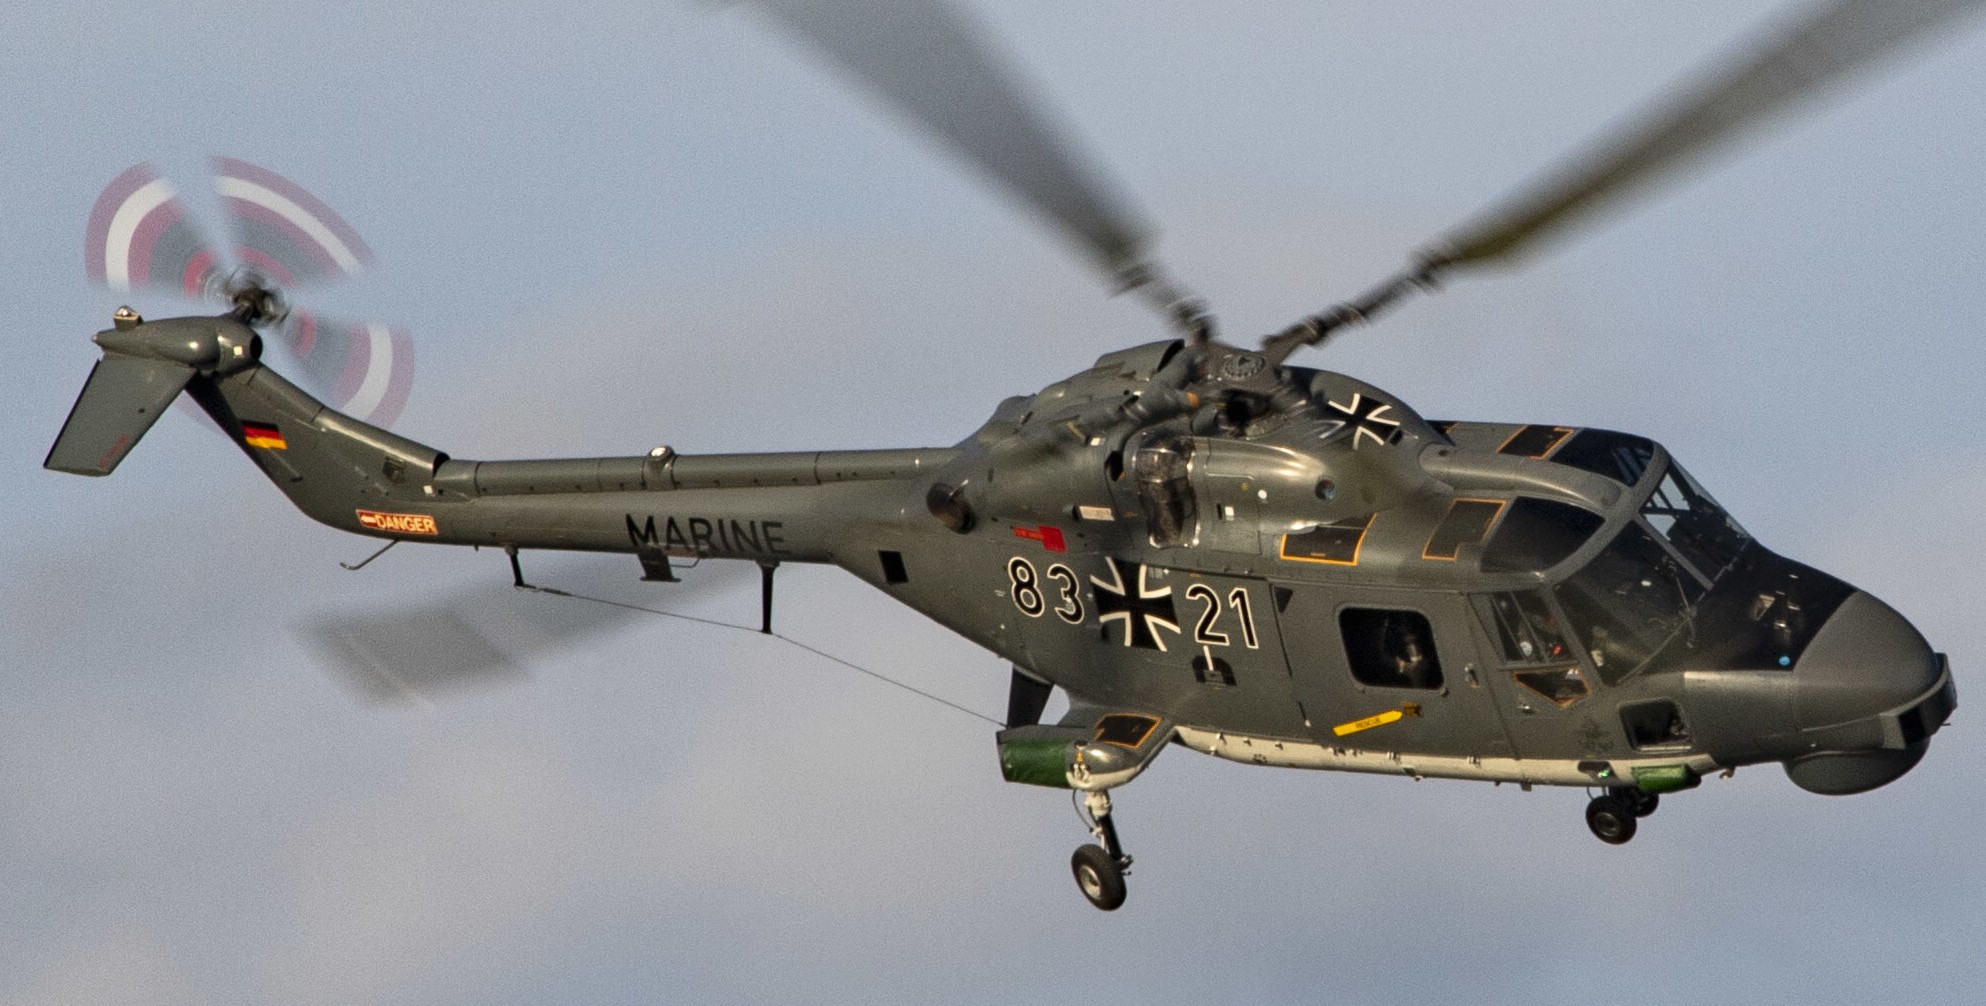 sea lynx mk.88a westland naval helicopter german navy deutsche marine 109